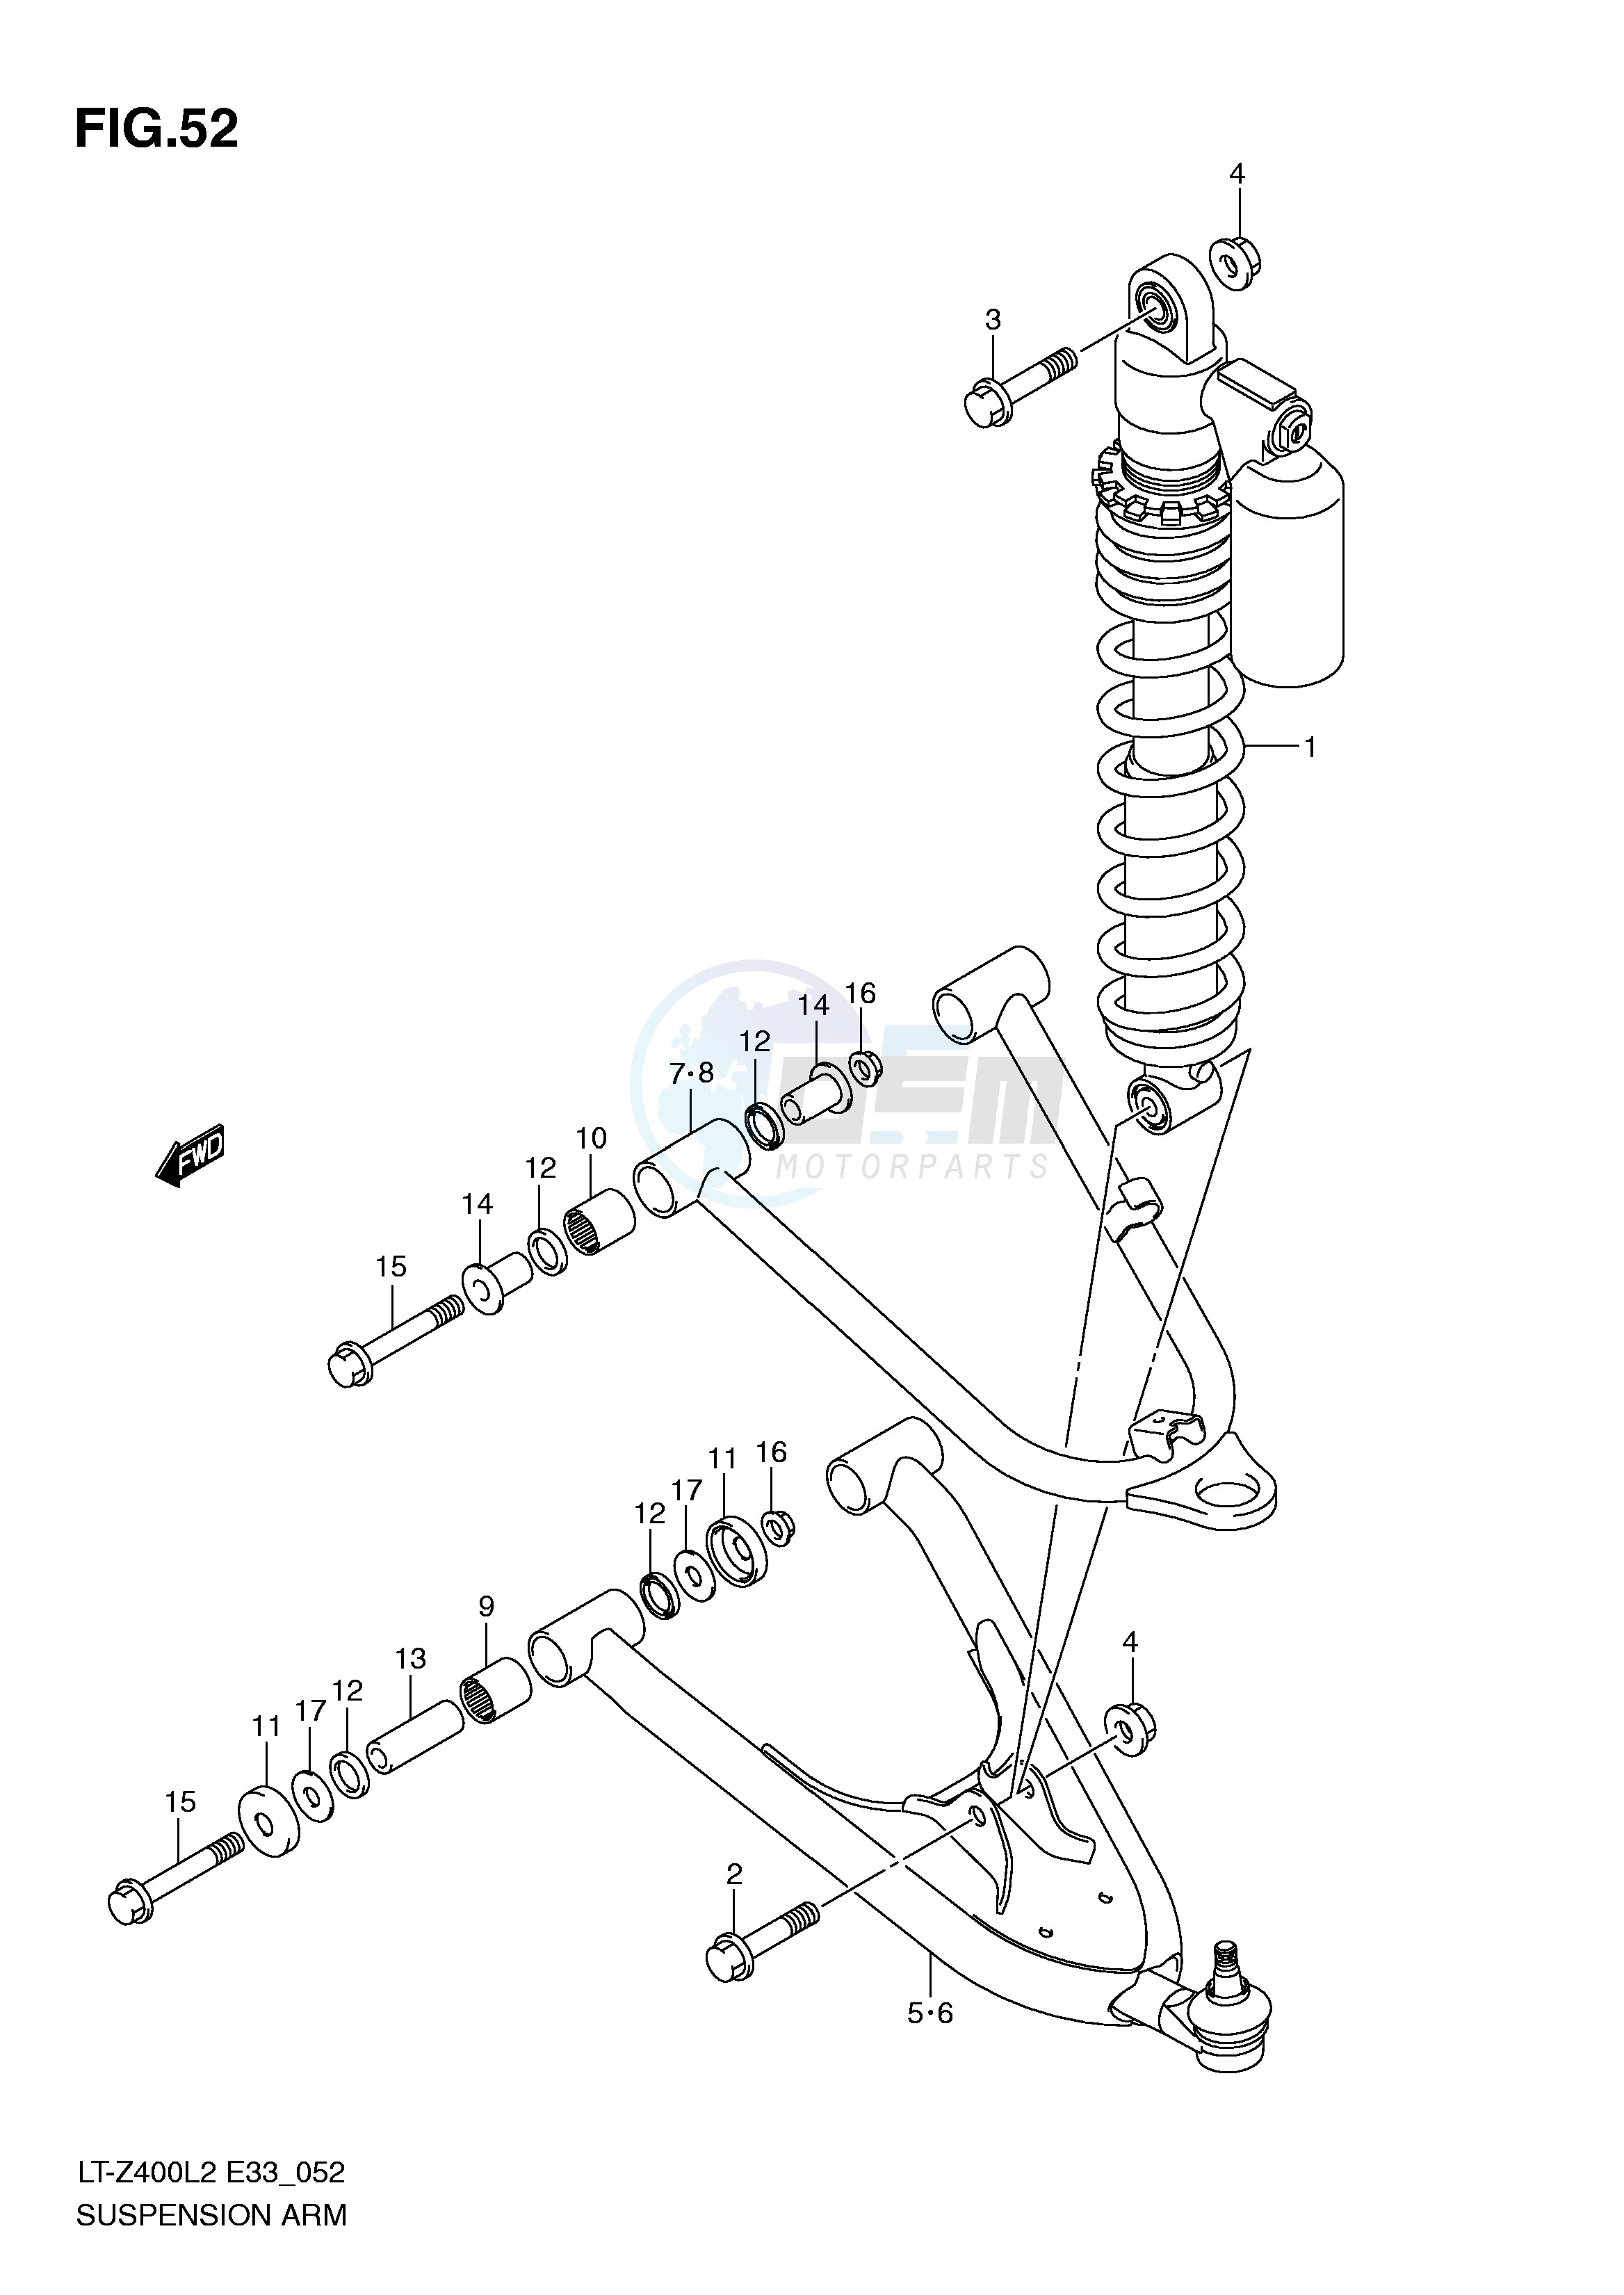 SUSPENSION ARM (LT-Z400ZL2 E33) blueprint